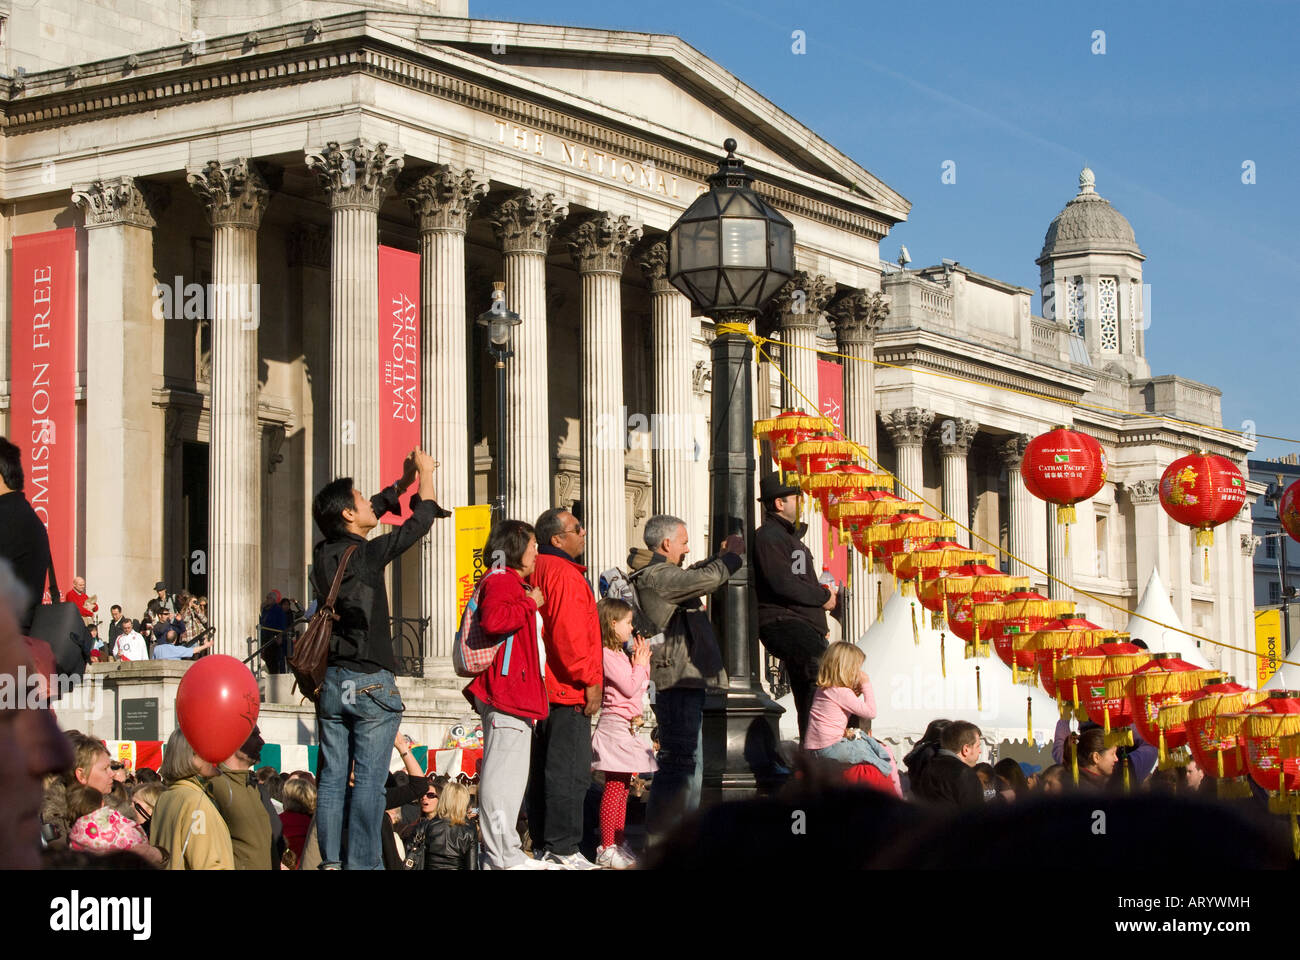 Personnes à Trafalgar Square Londres National Gallery de l'extérieur pour les célébrations du Nouvel An chinois 2008 Banque D'Images